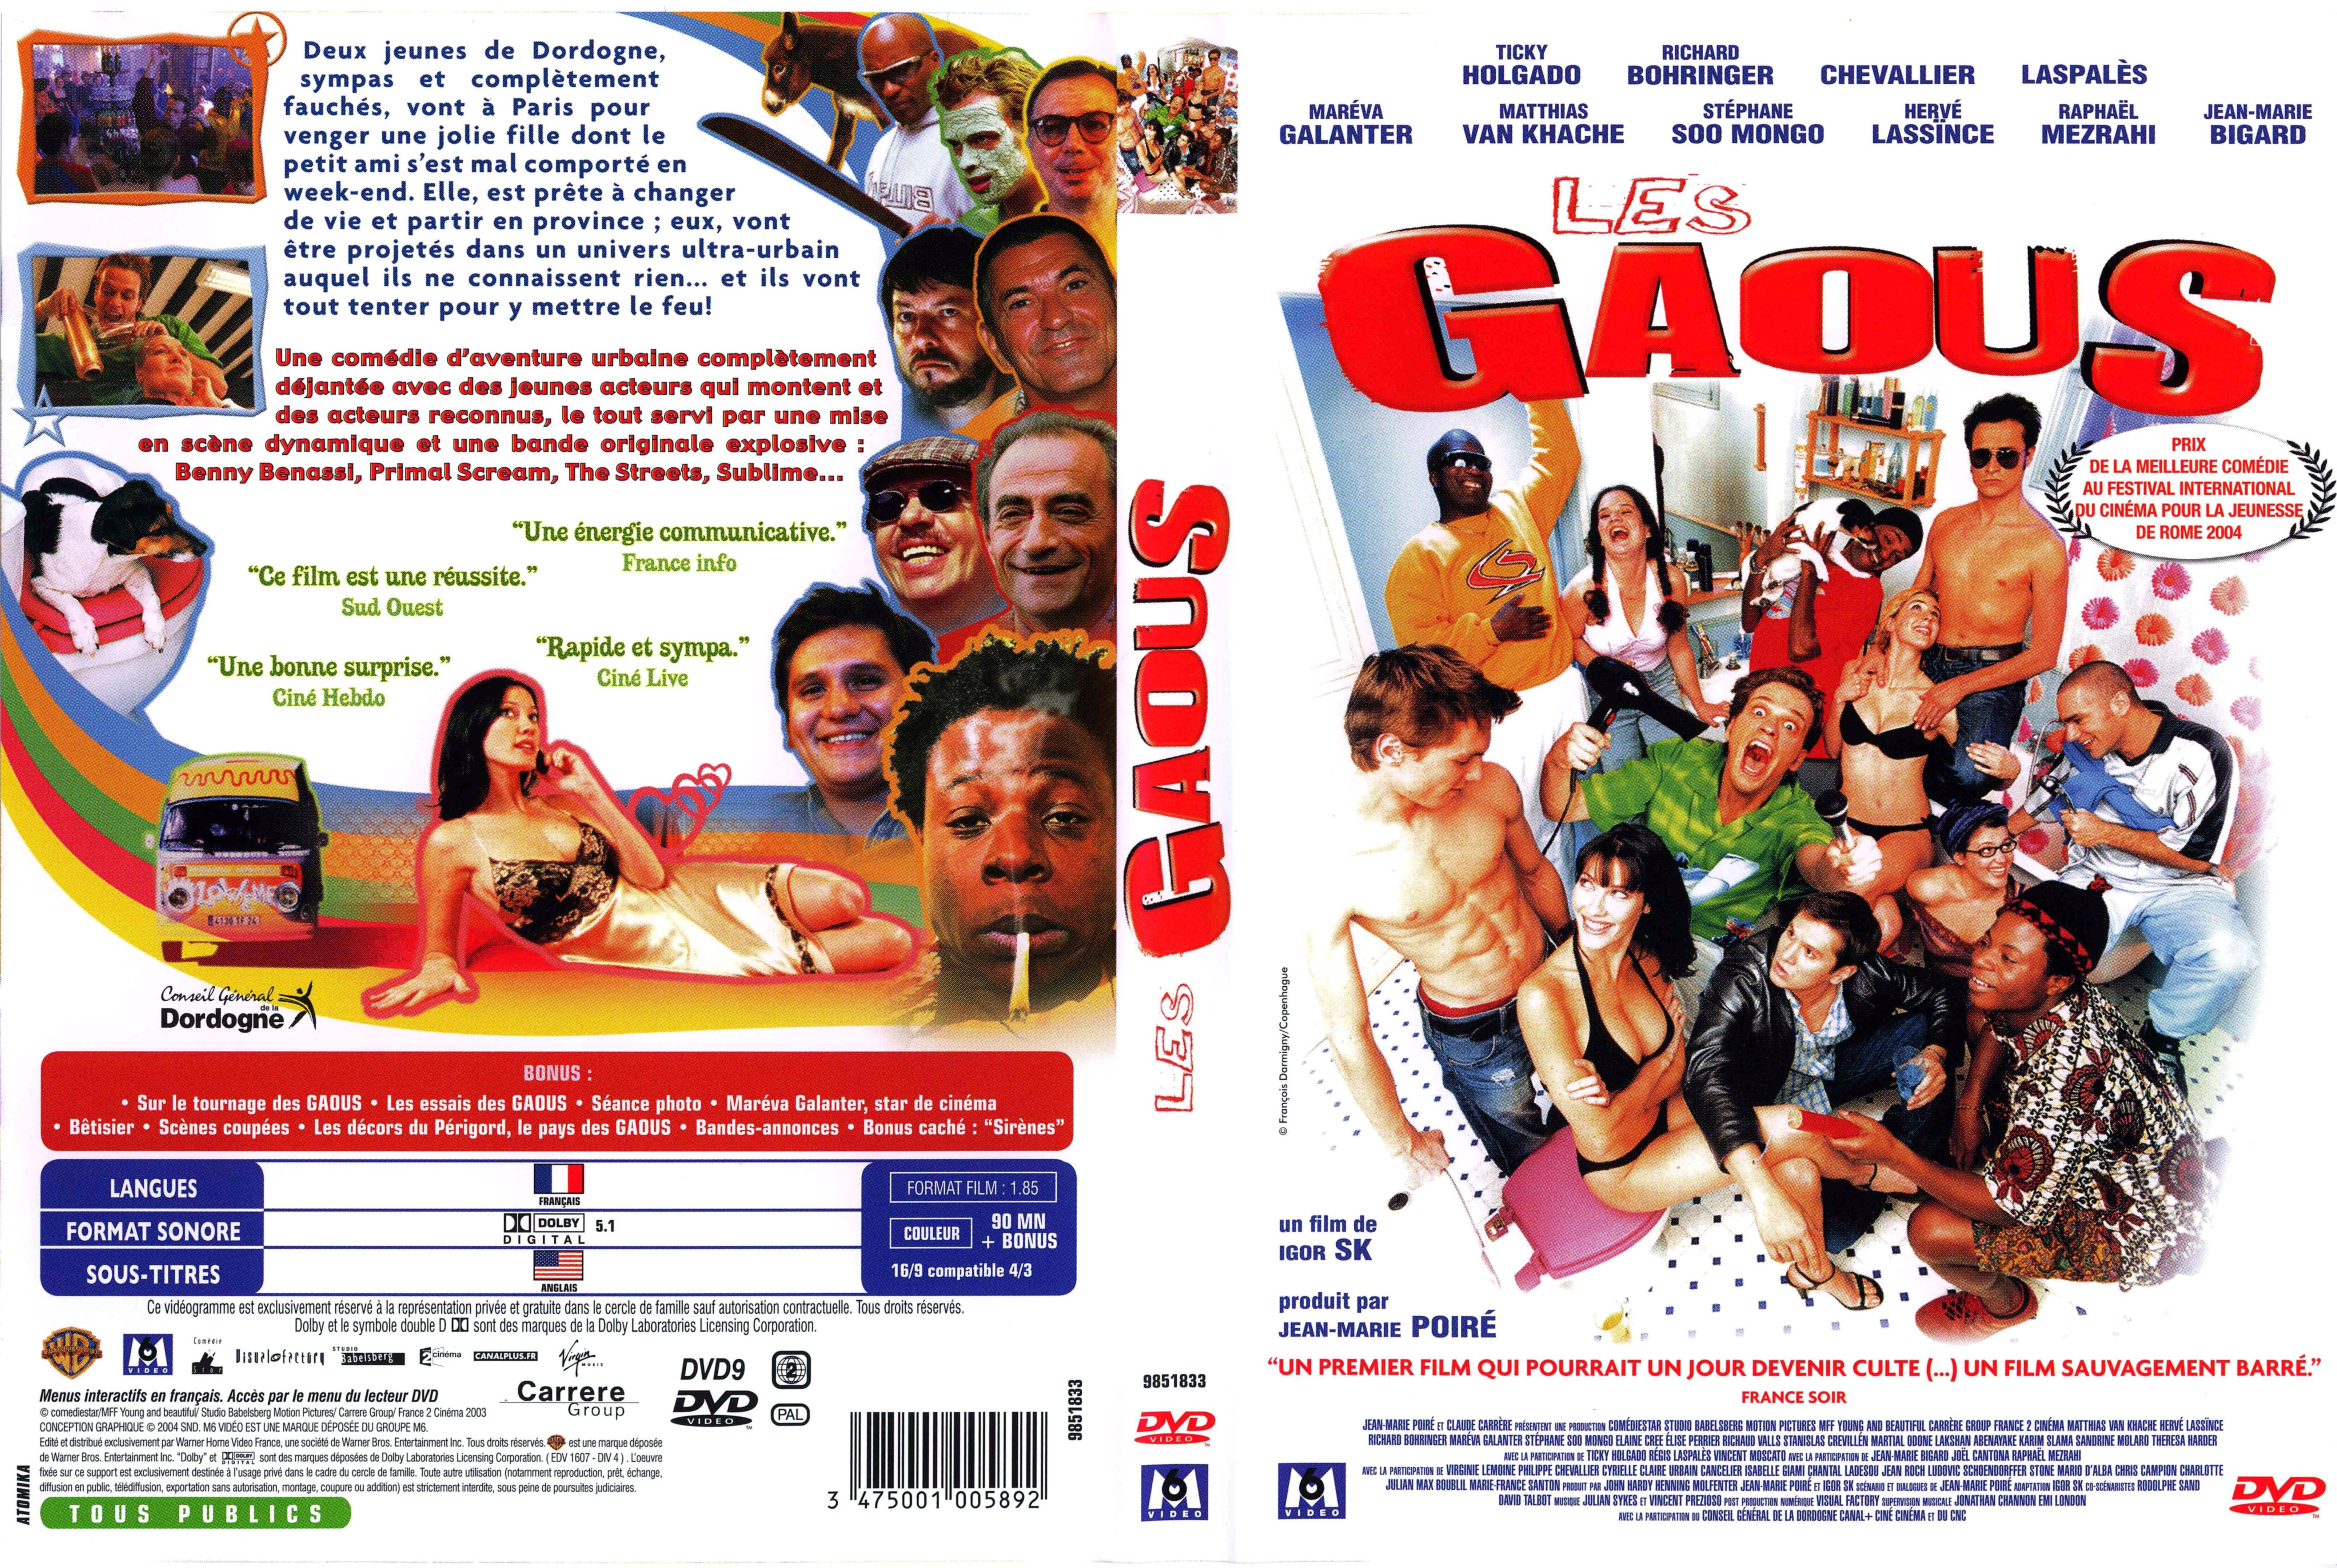 Jaquette DVD Les gaous